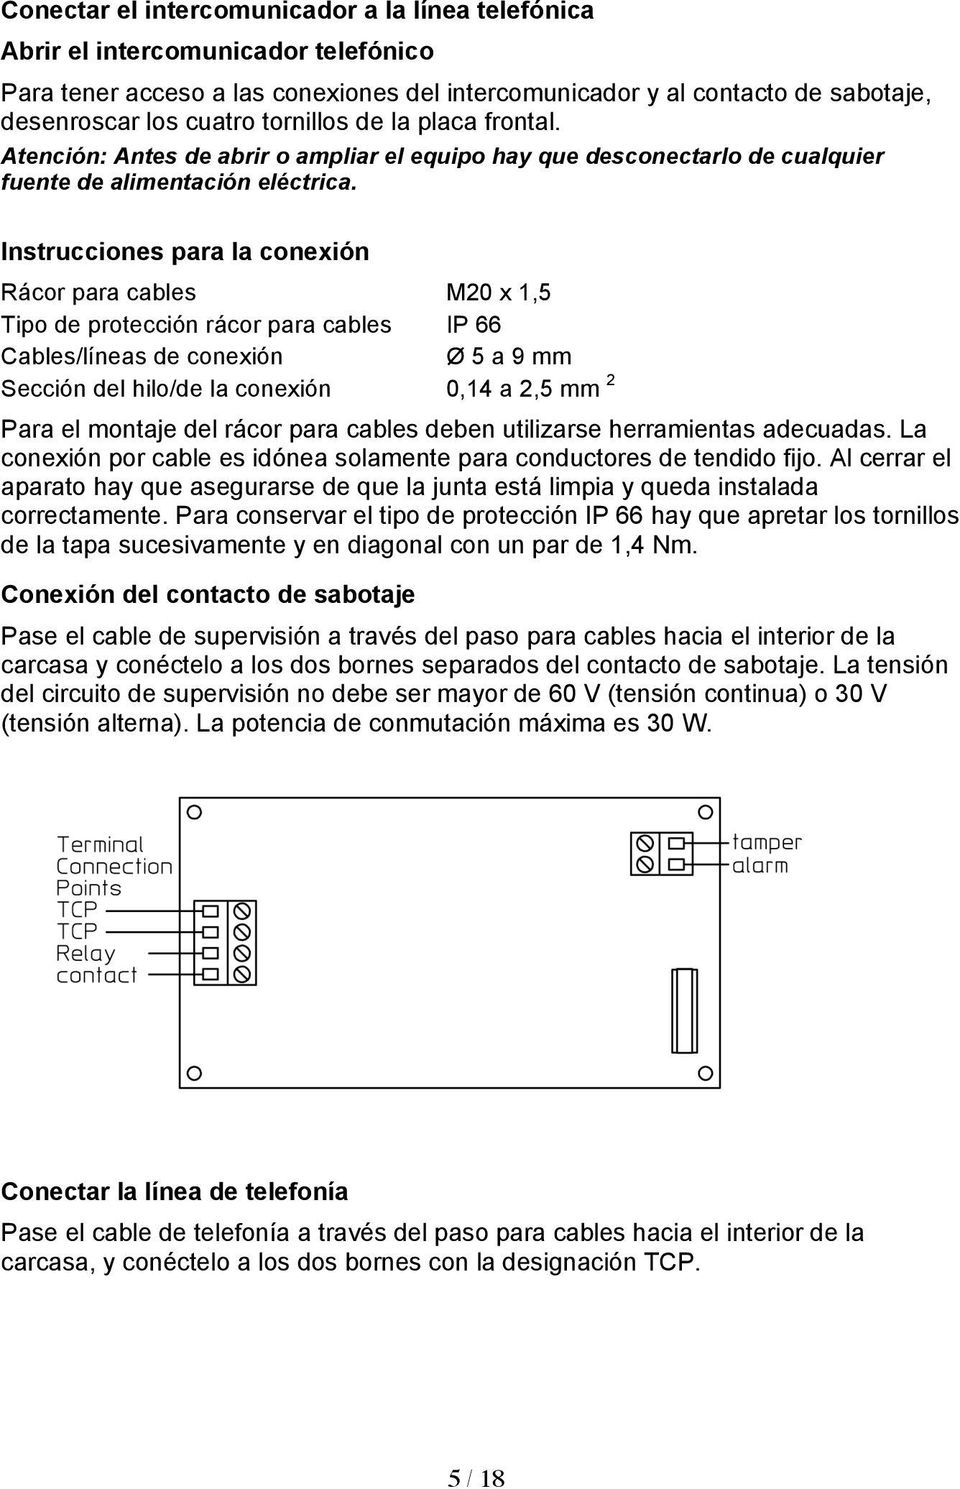 Instrucciones para la conexión Rácor para cables M20 x 1,5 Tipo de protección rácor para cables IP 66 Cables/líneas de conexión Ø 5 a 9 mm Sección del hilo/de la conexión 0,14 a 2,5 mm 2 Para el